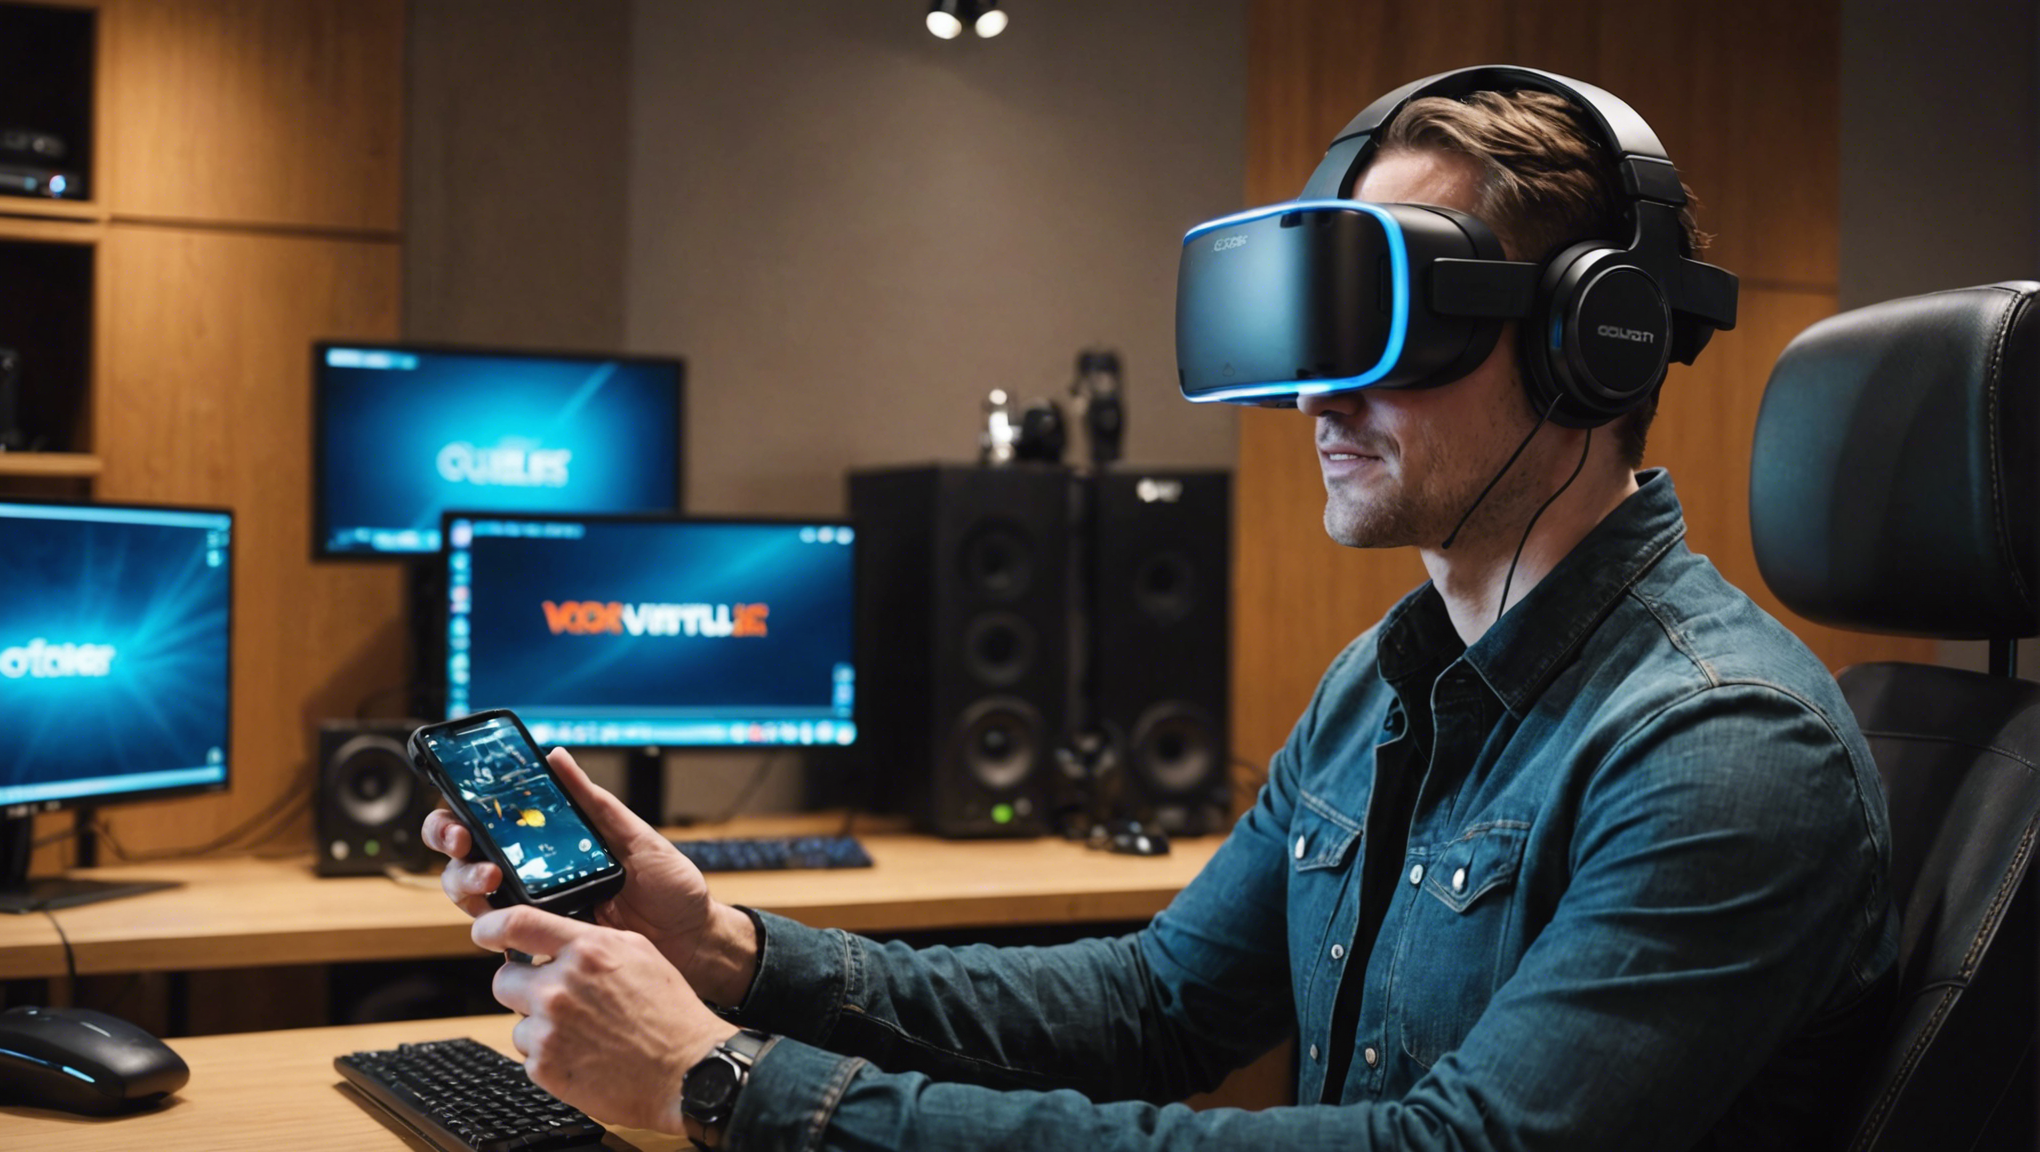 découvrez les meilleurs casques de réalité virtuelle disponibles sur le marché avec notre sélection. comparez les fonctionnalités et trouvez le casque de réalité virtuelle parfait pour une expérience immersive.